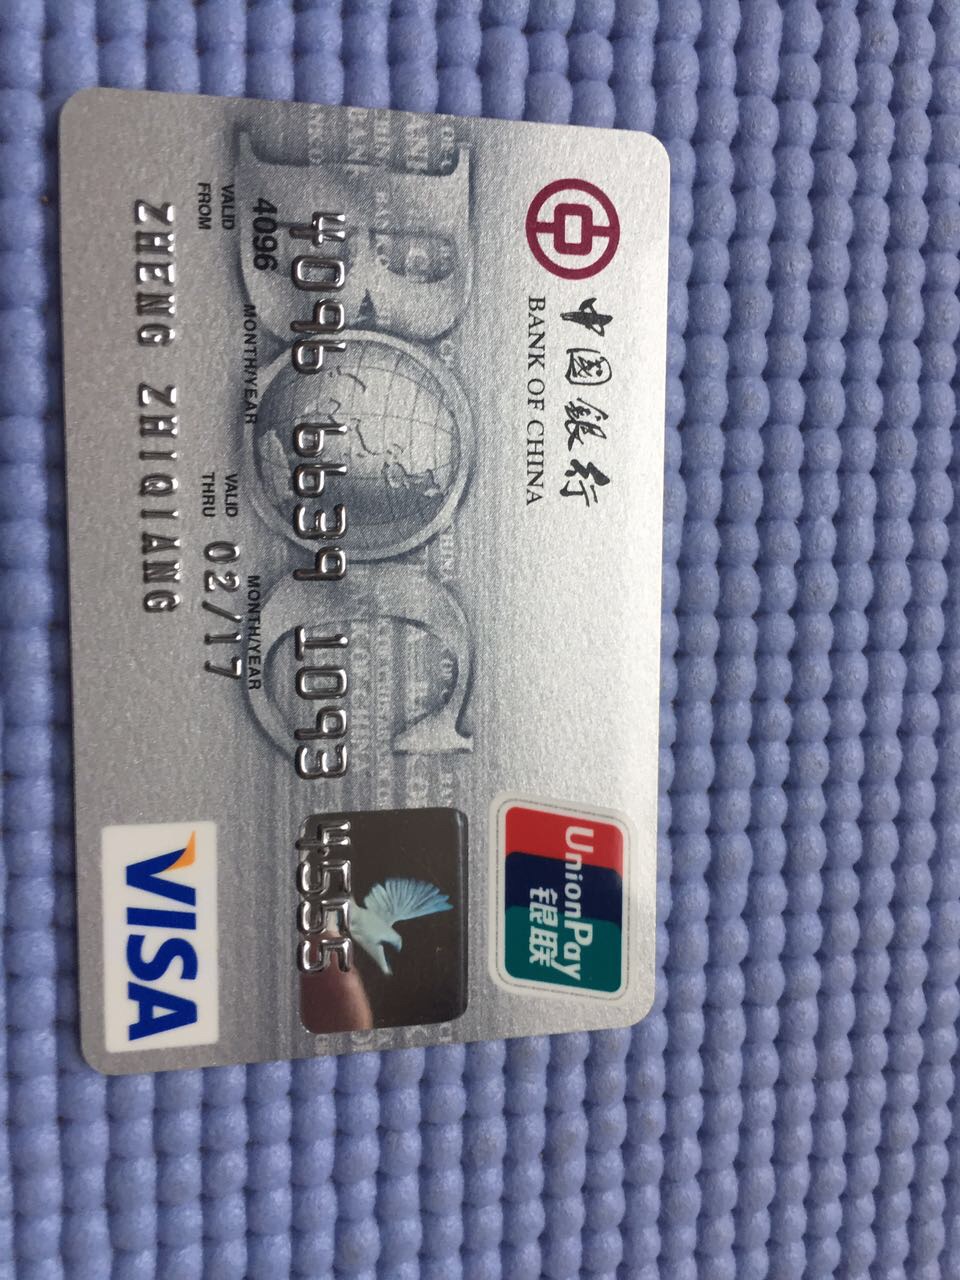 中国银行卡的种类图片